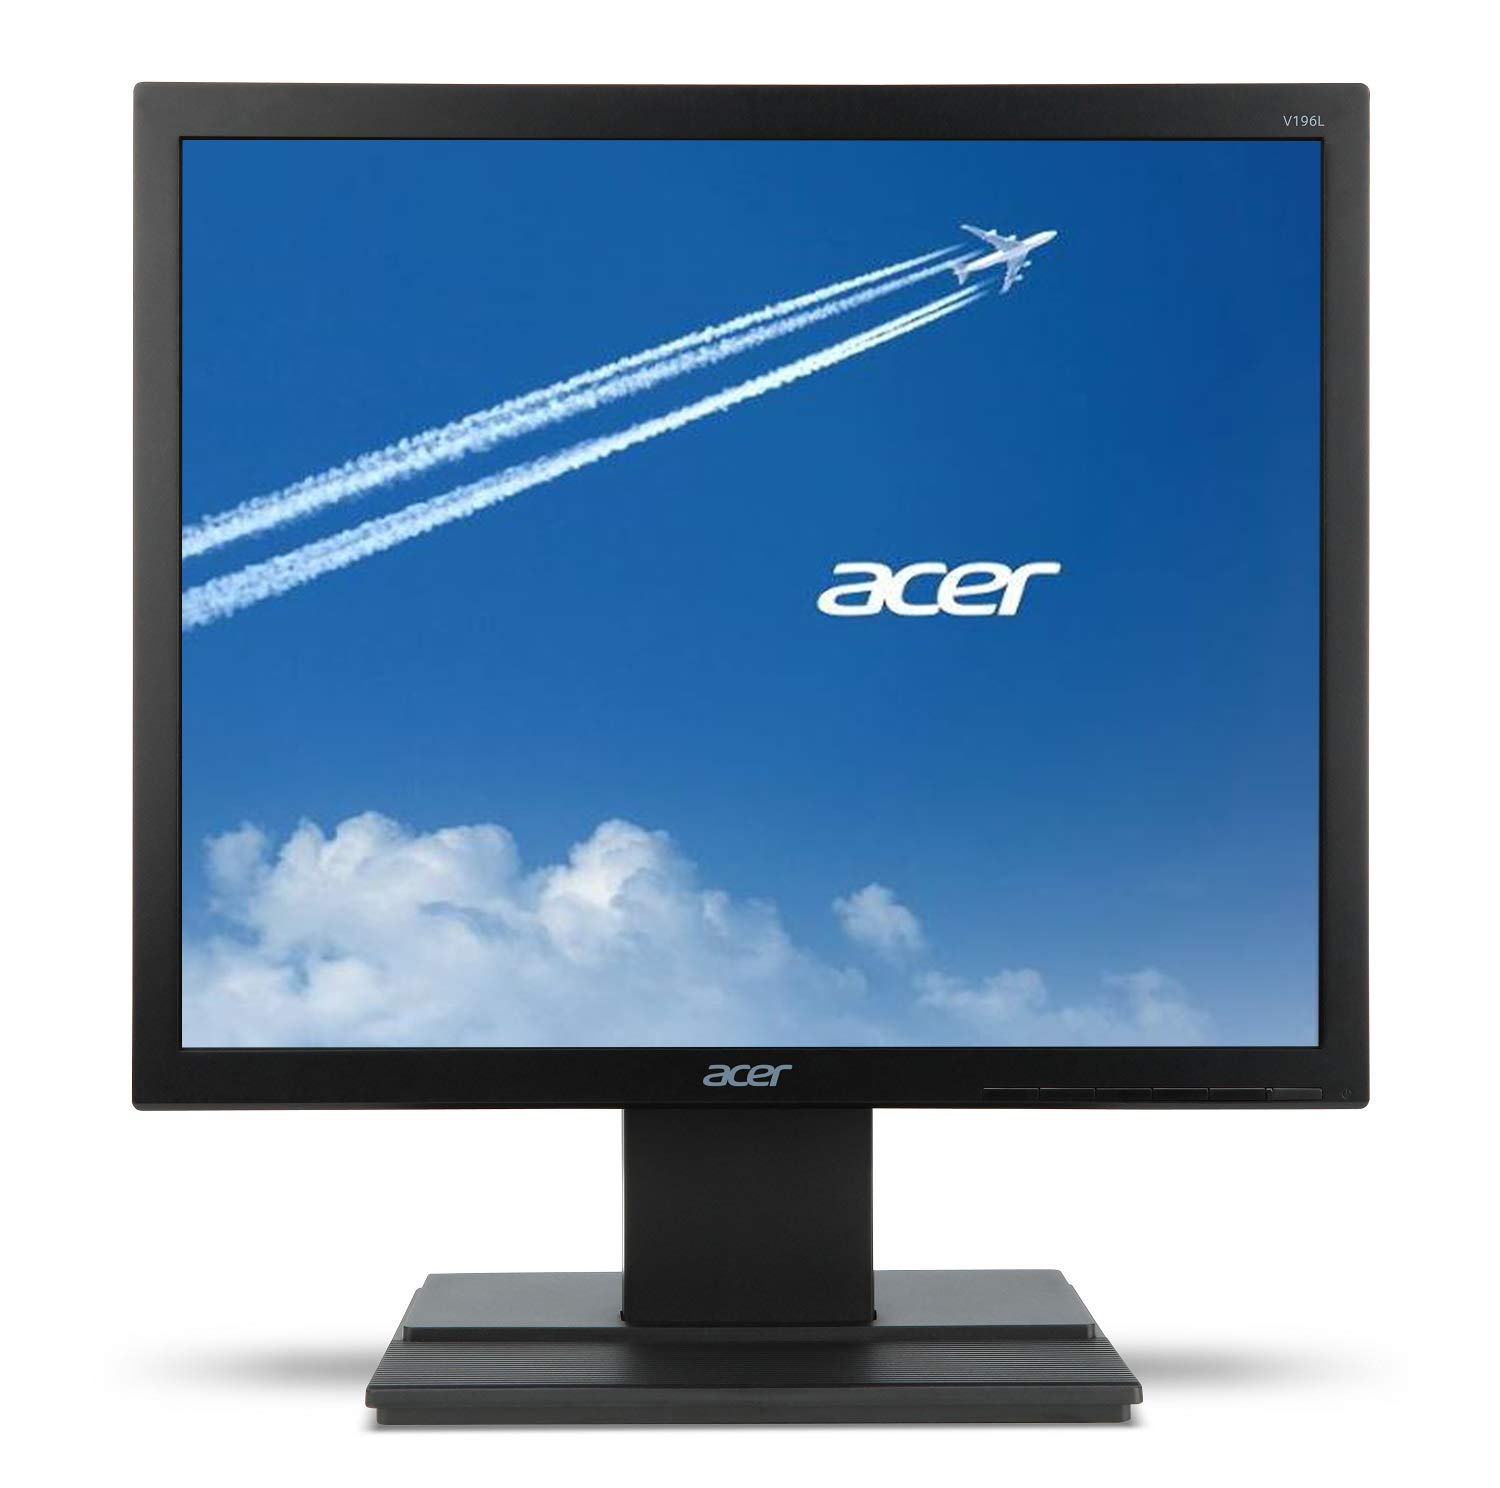 Acer V196L Bb 19 フィート HD (1280 x 1024) IPS モニター (VGA ポート)